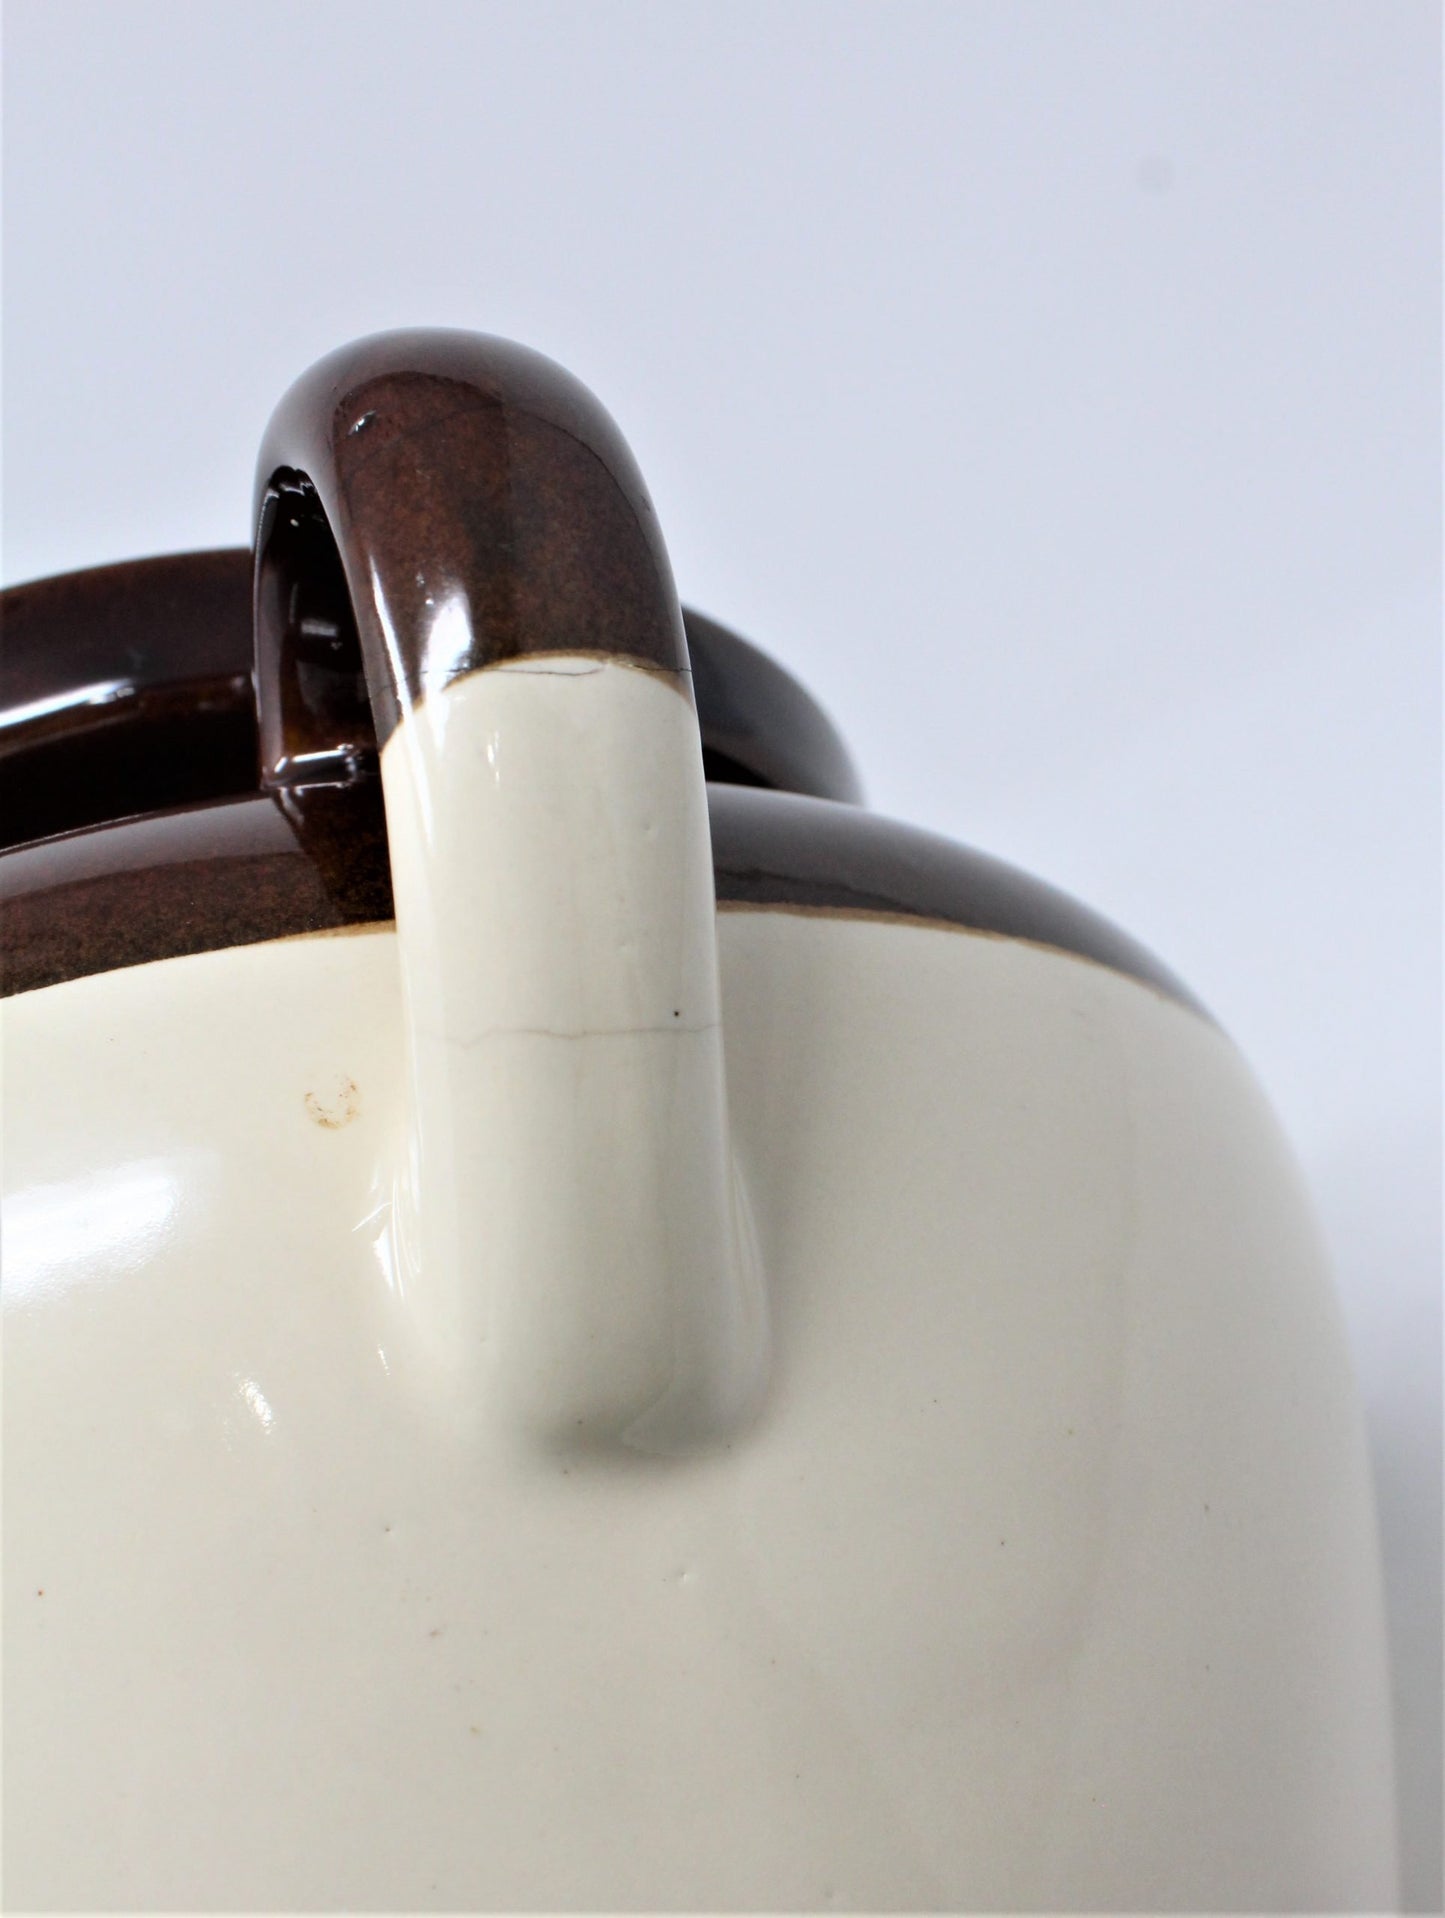 Crock / Bean Pot, McCoy Pottery Brown Tan #342 No Lid, 3 Qt, Vintage